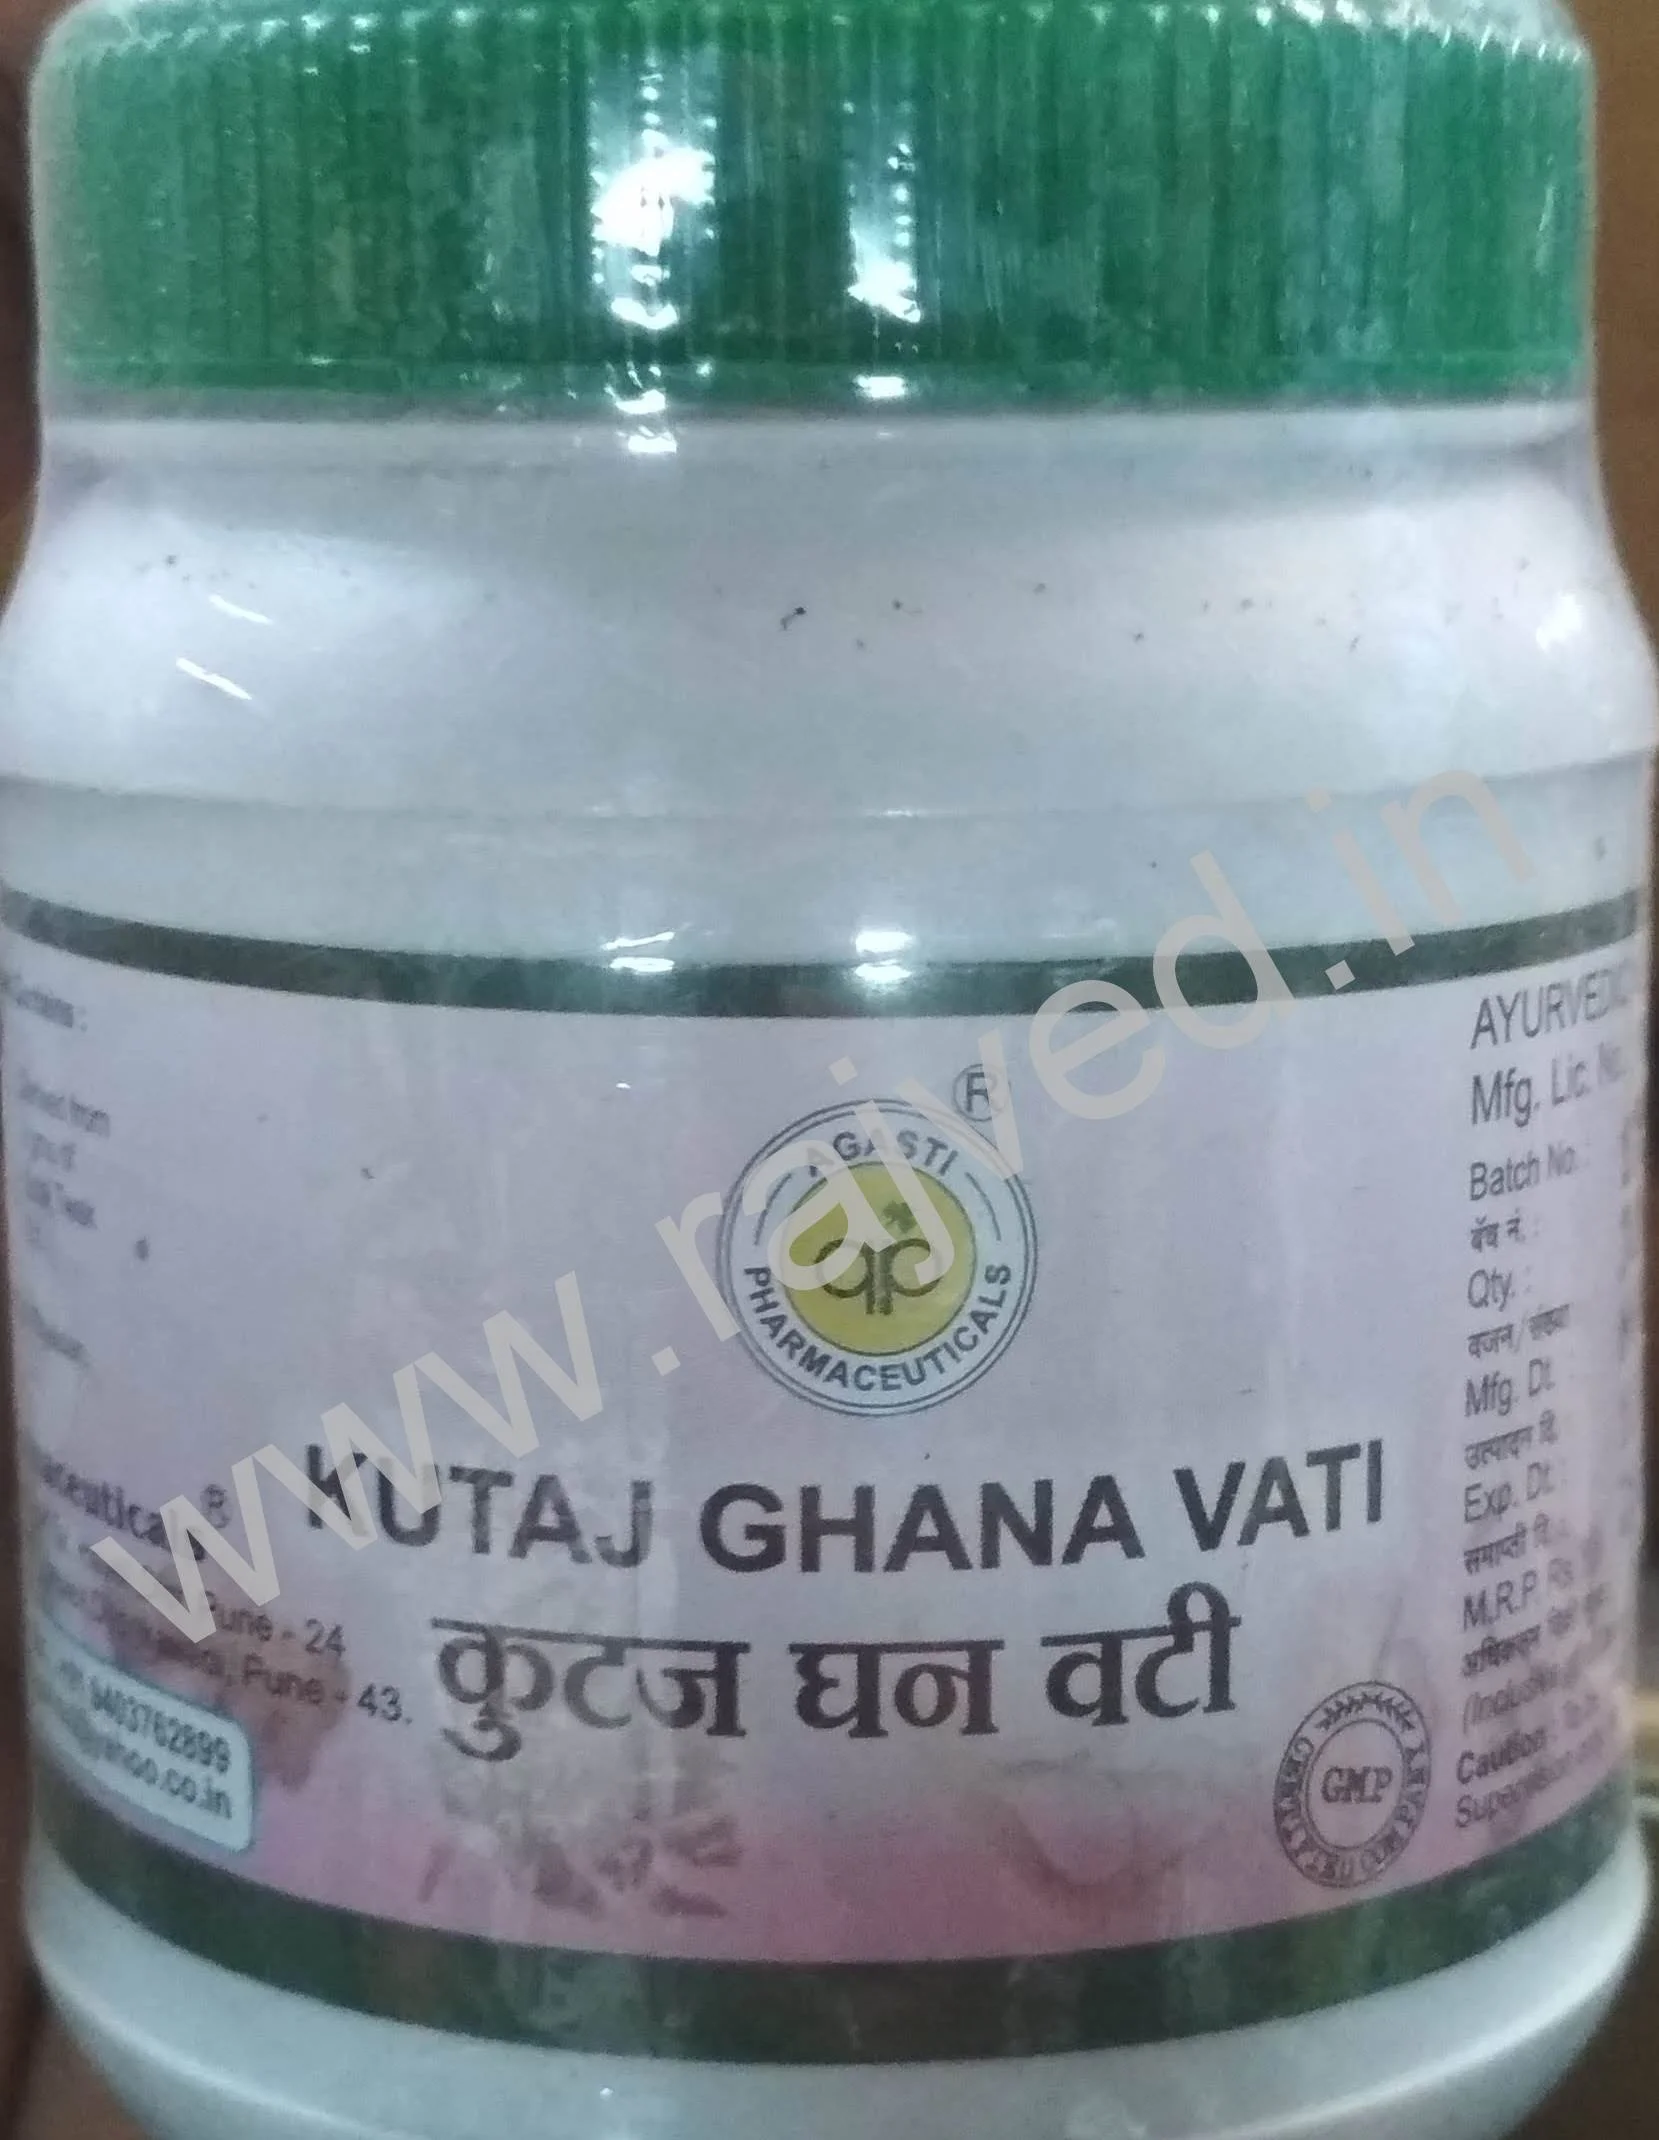 kutaj ghana vati 250gm 1000 tablet upto 15% off agasti pharmaceuticals